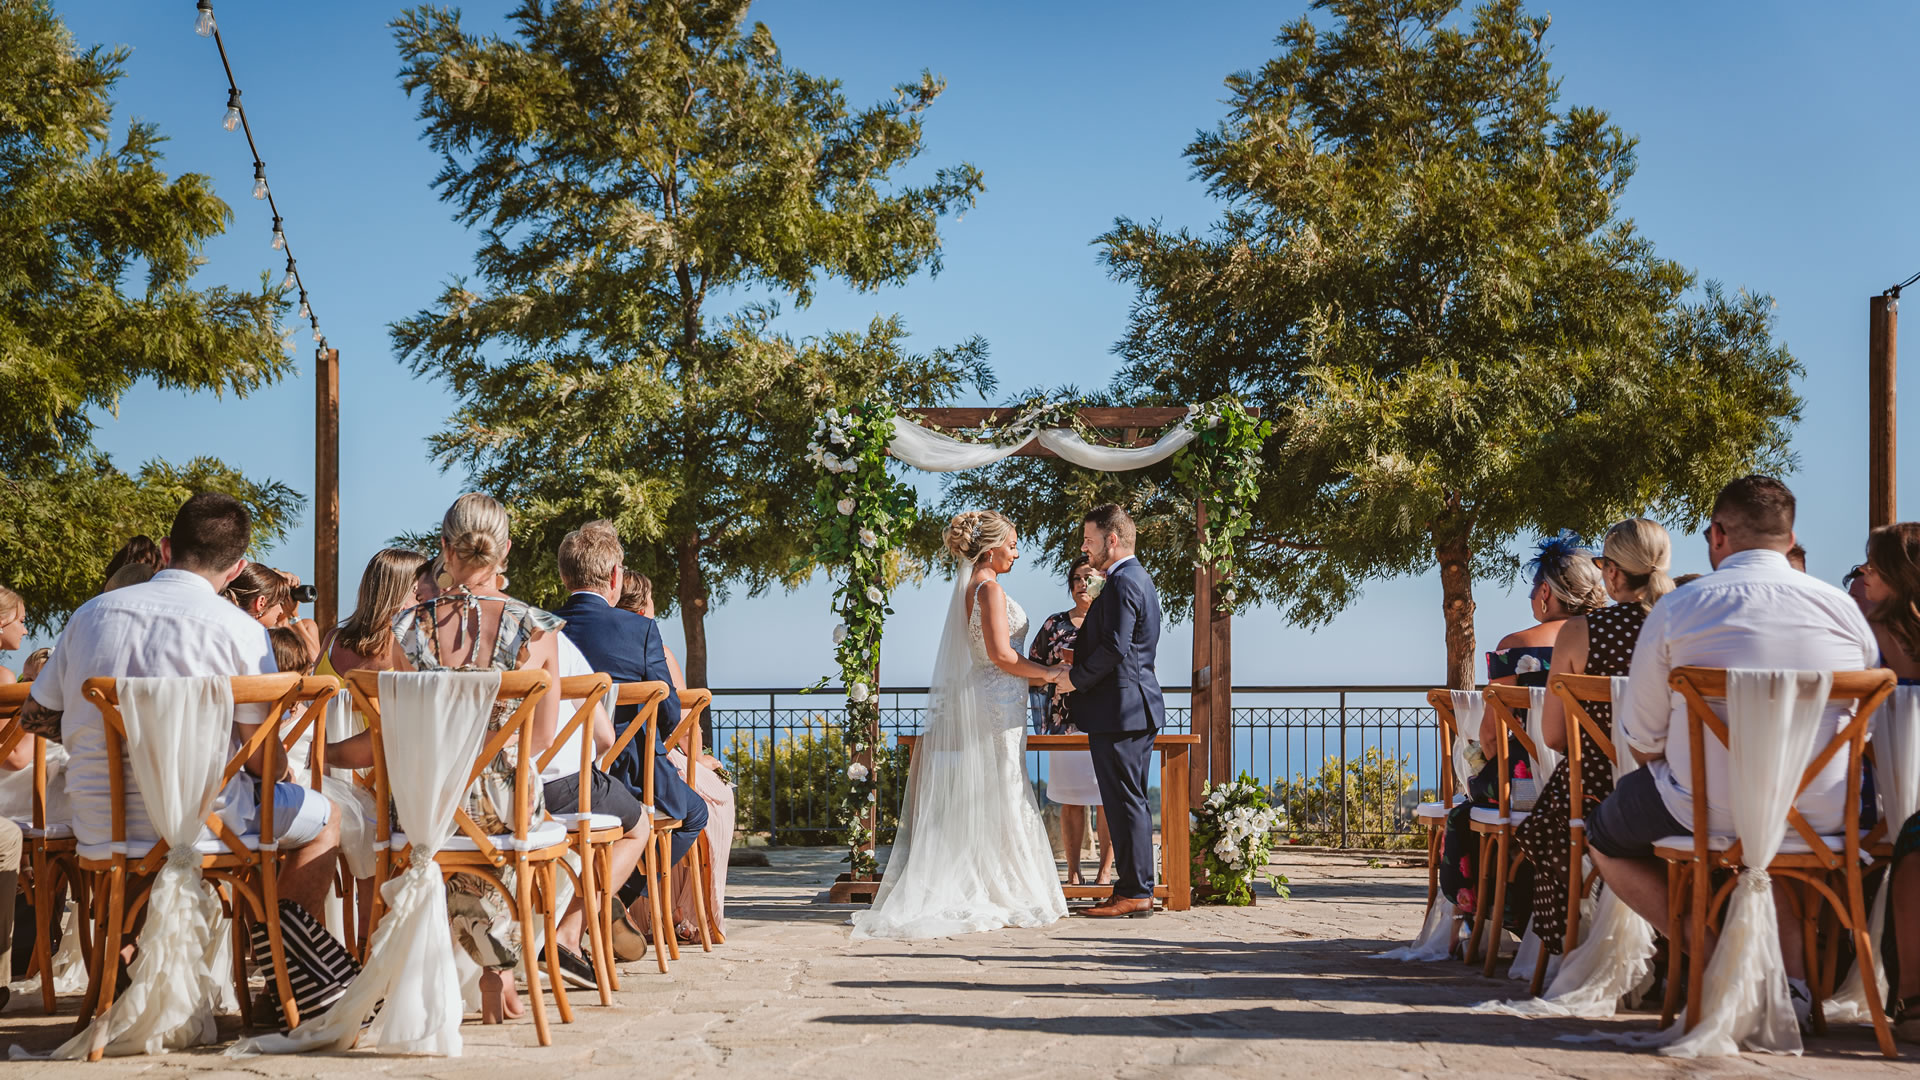 Liopetro wedding venue rustic weddings in Paphos, Cyprus